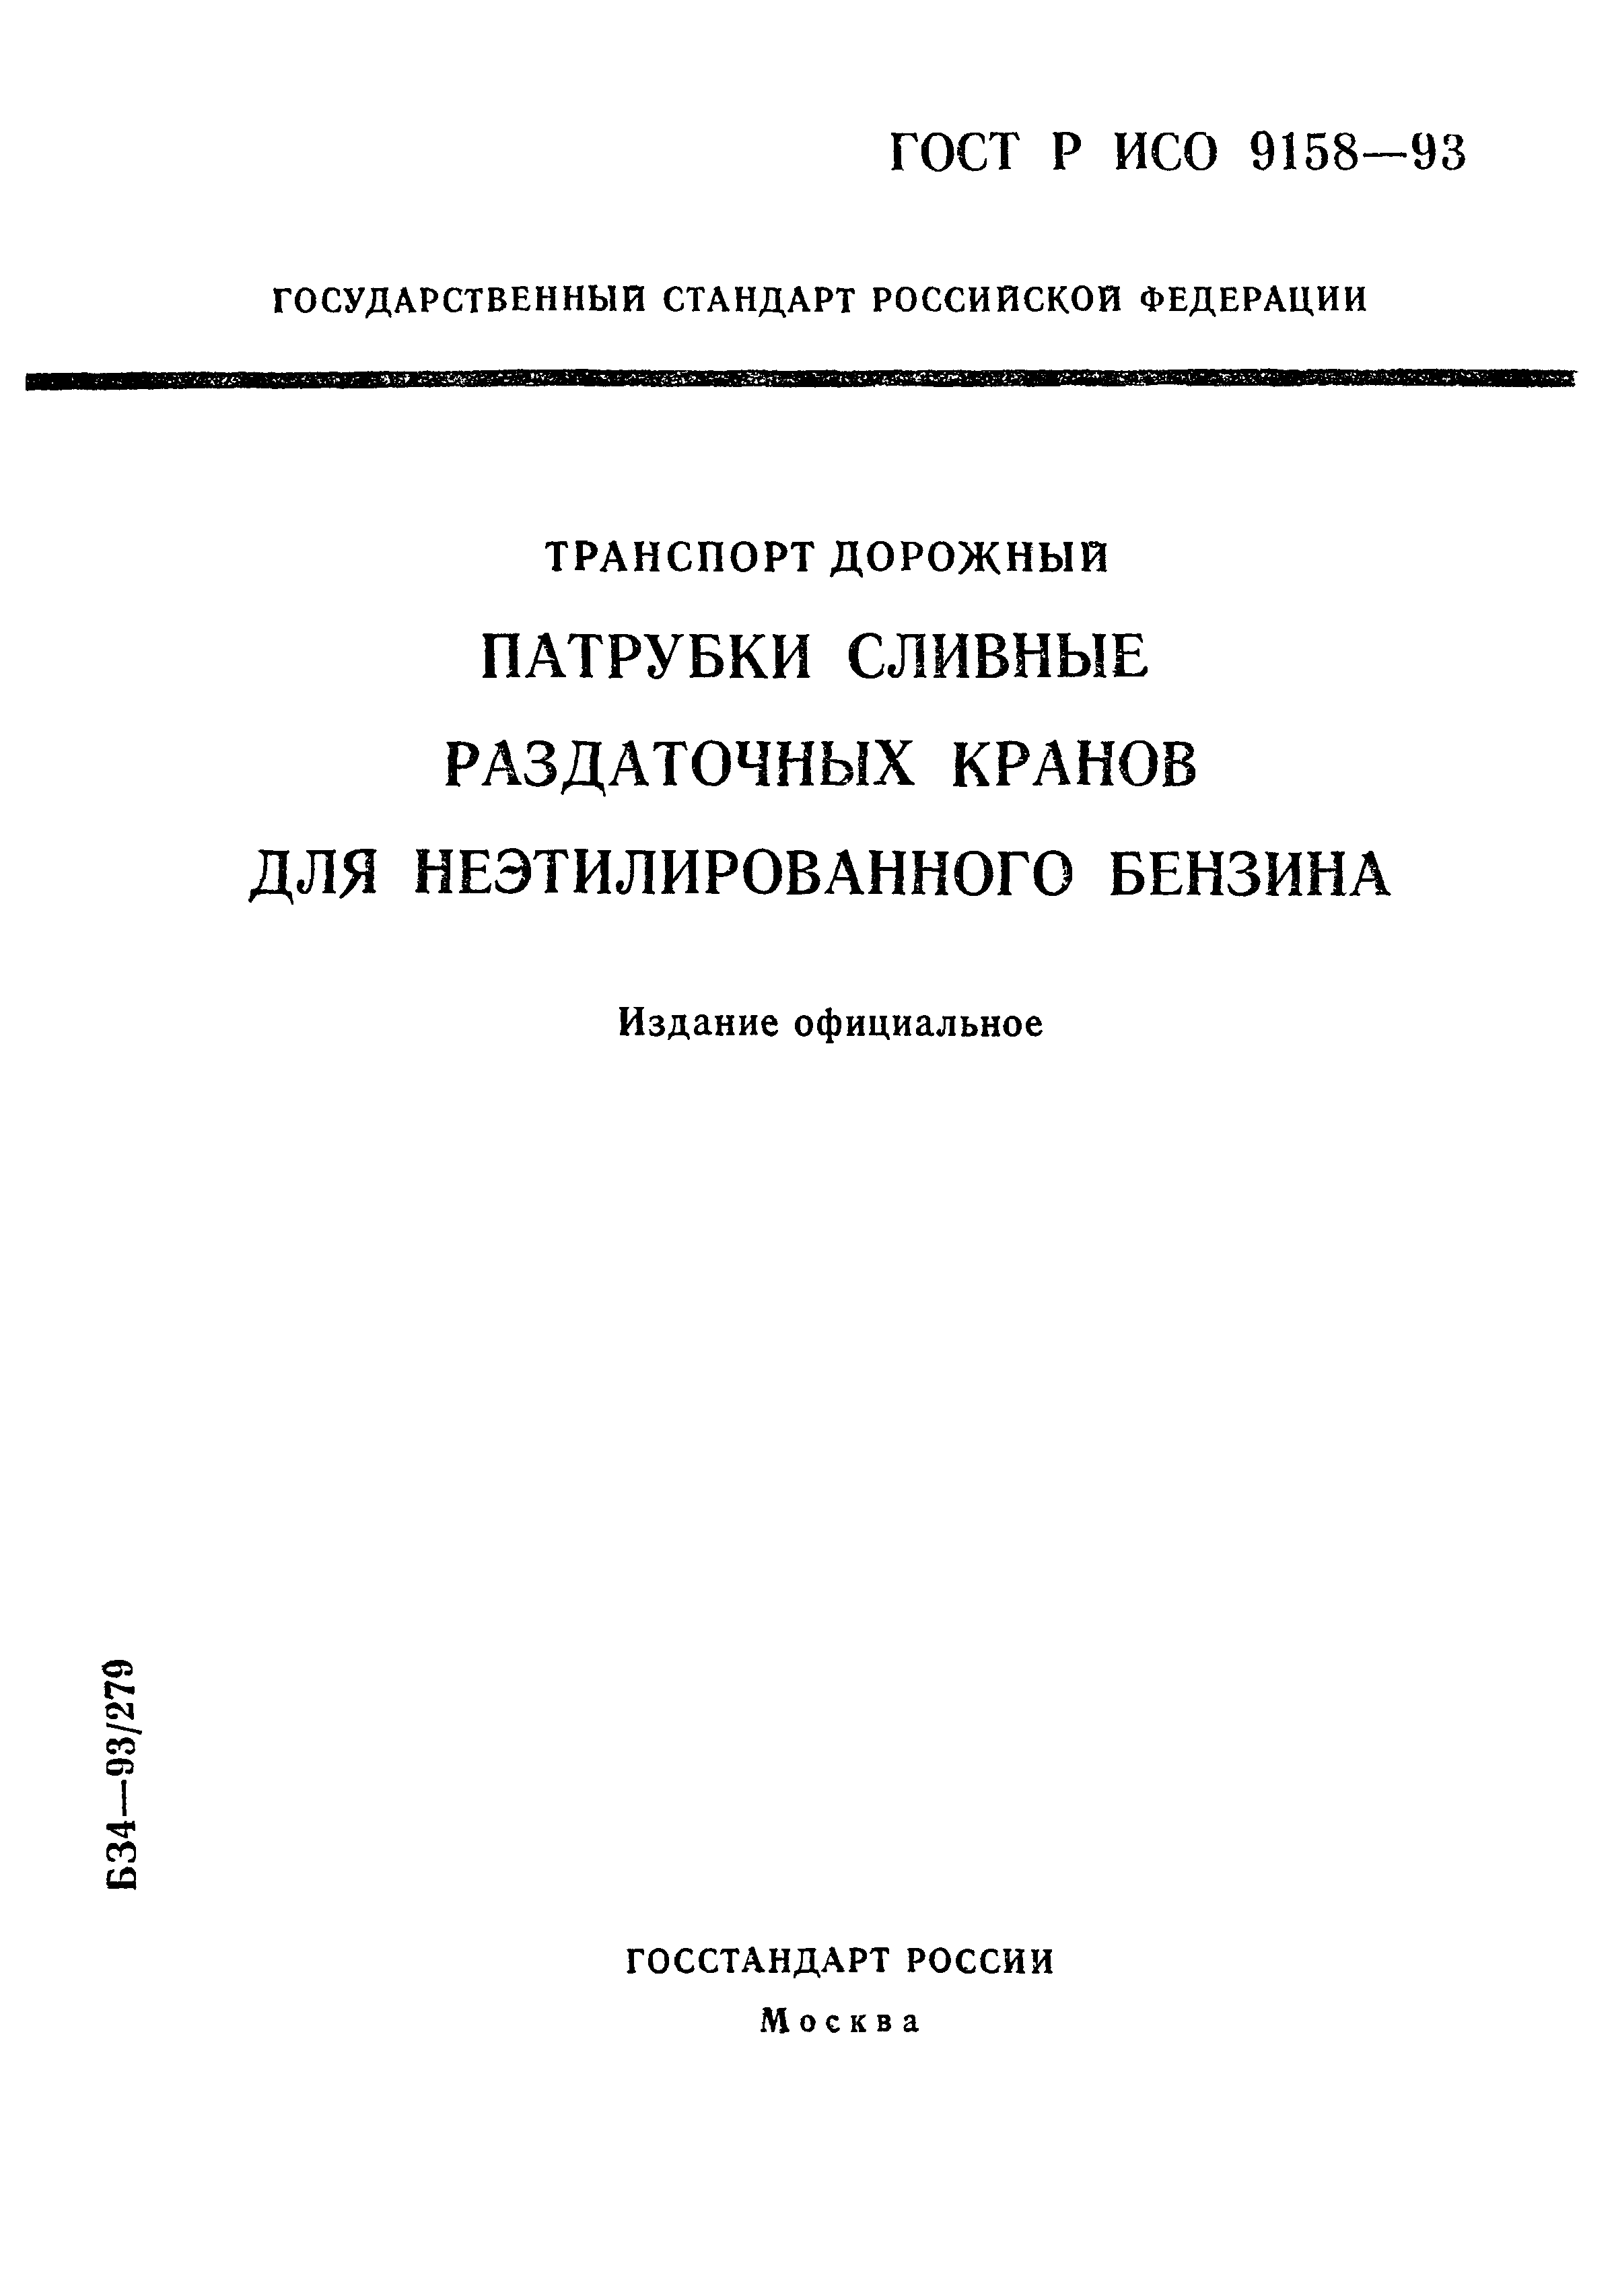 ГОСТ Р ИСО 9158-93